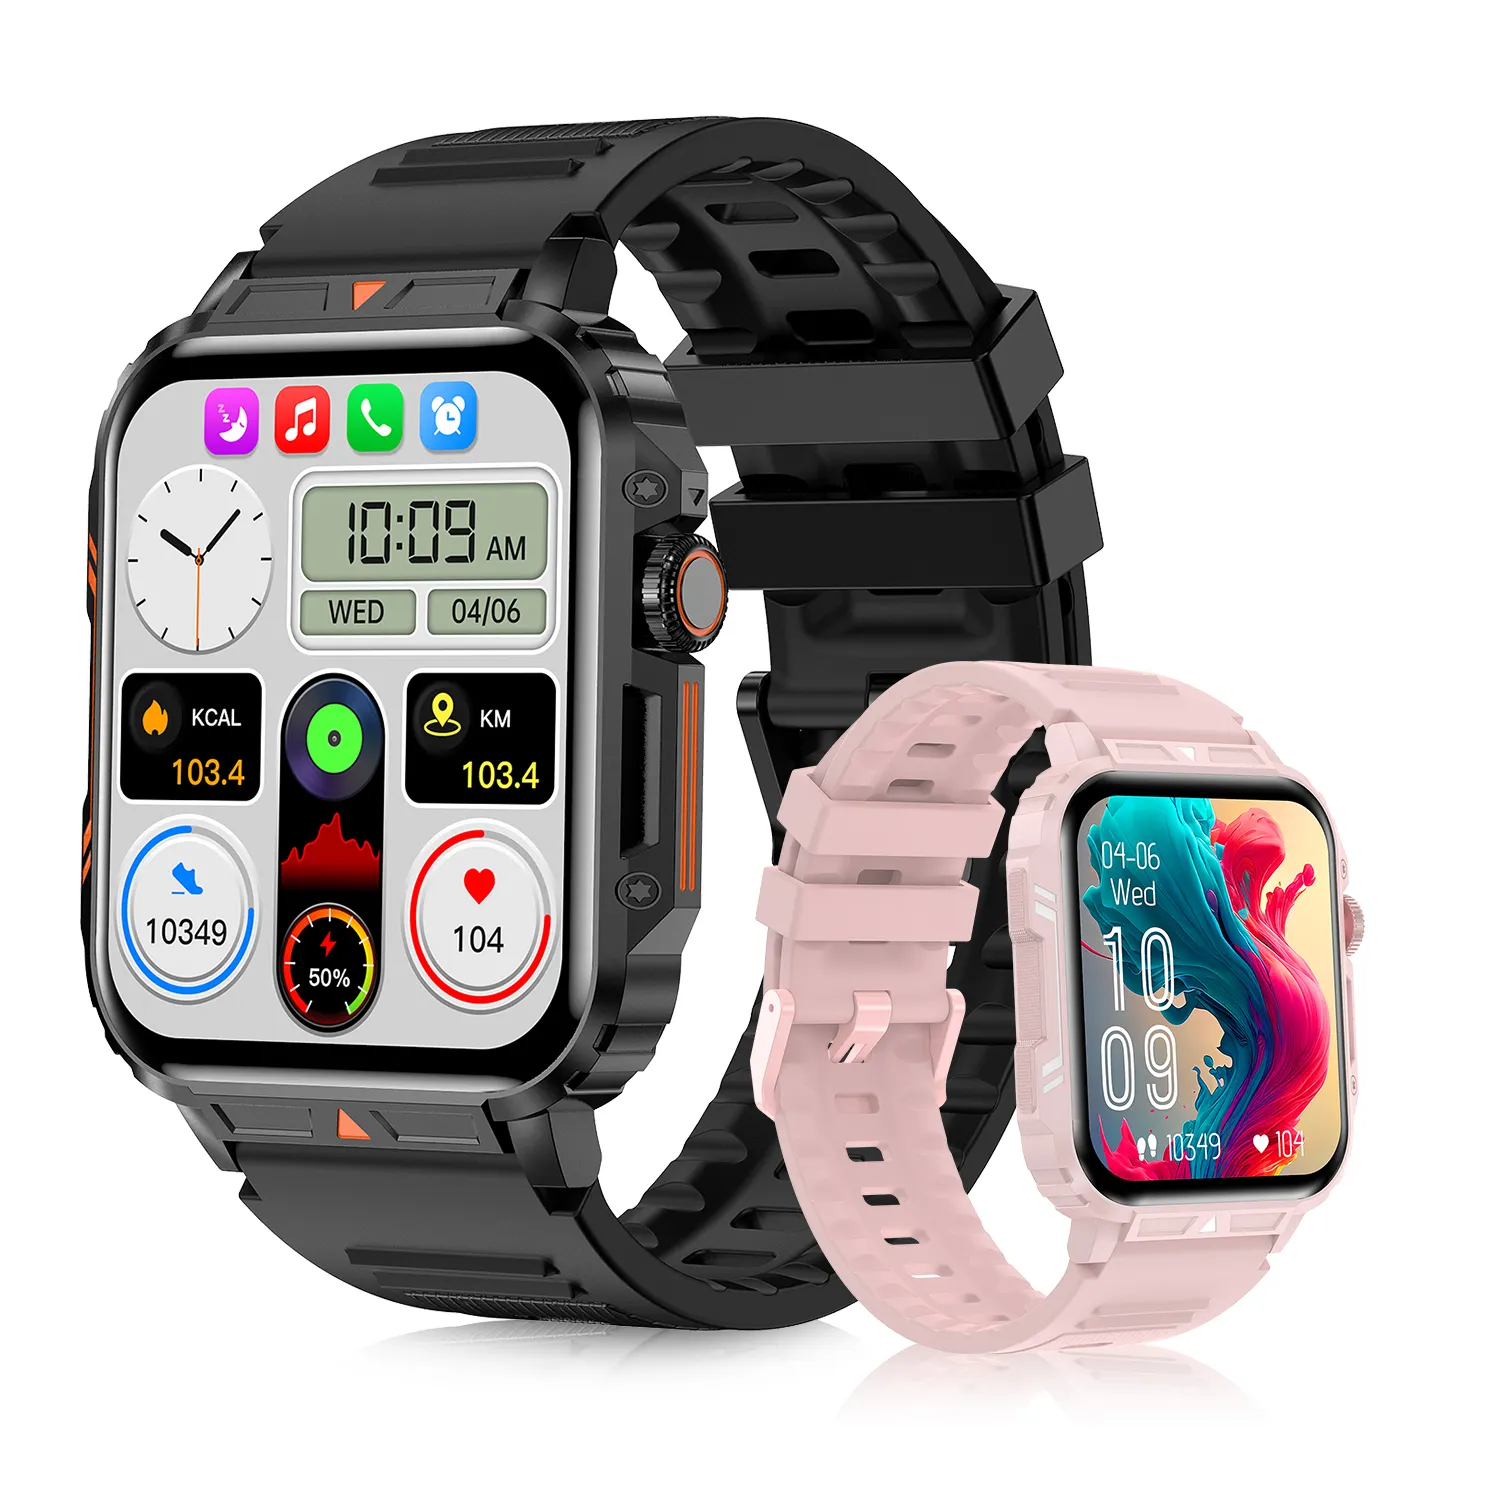 V81 novo relógio inteligente ao ar livre barato chamada telefônica smartwatch esportes música reloj monitoramento do sono saúde relógio inteligente para Android IOS